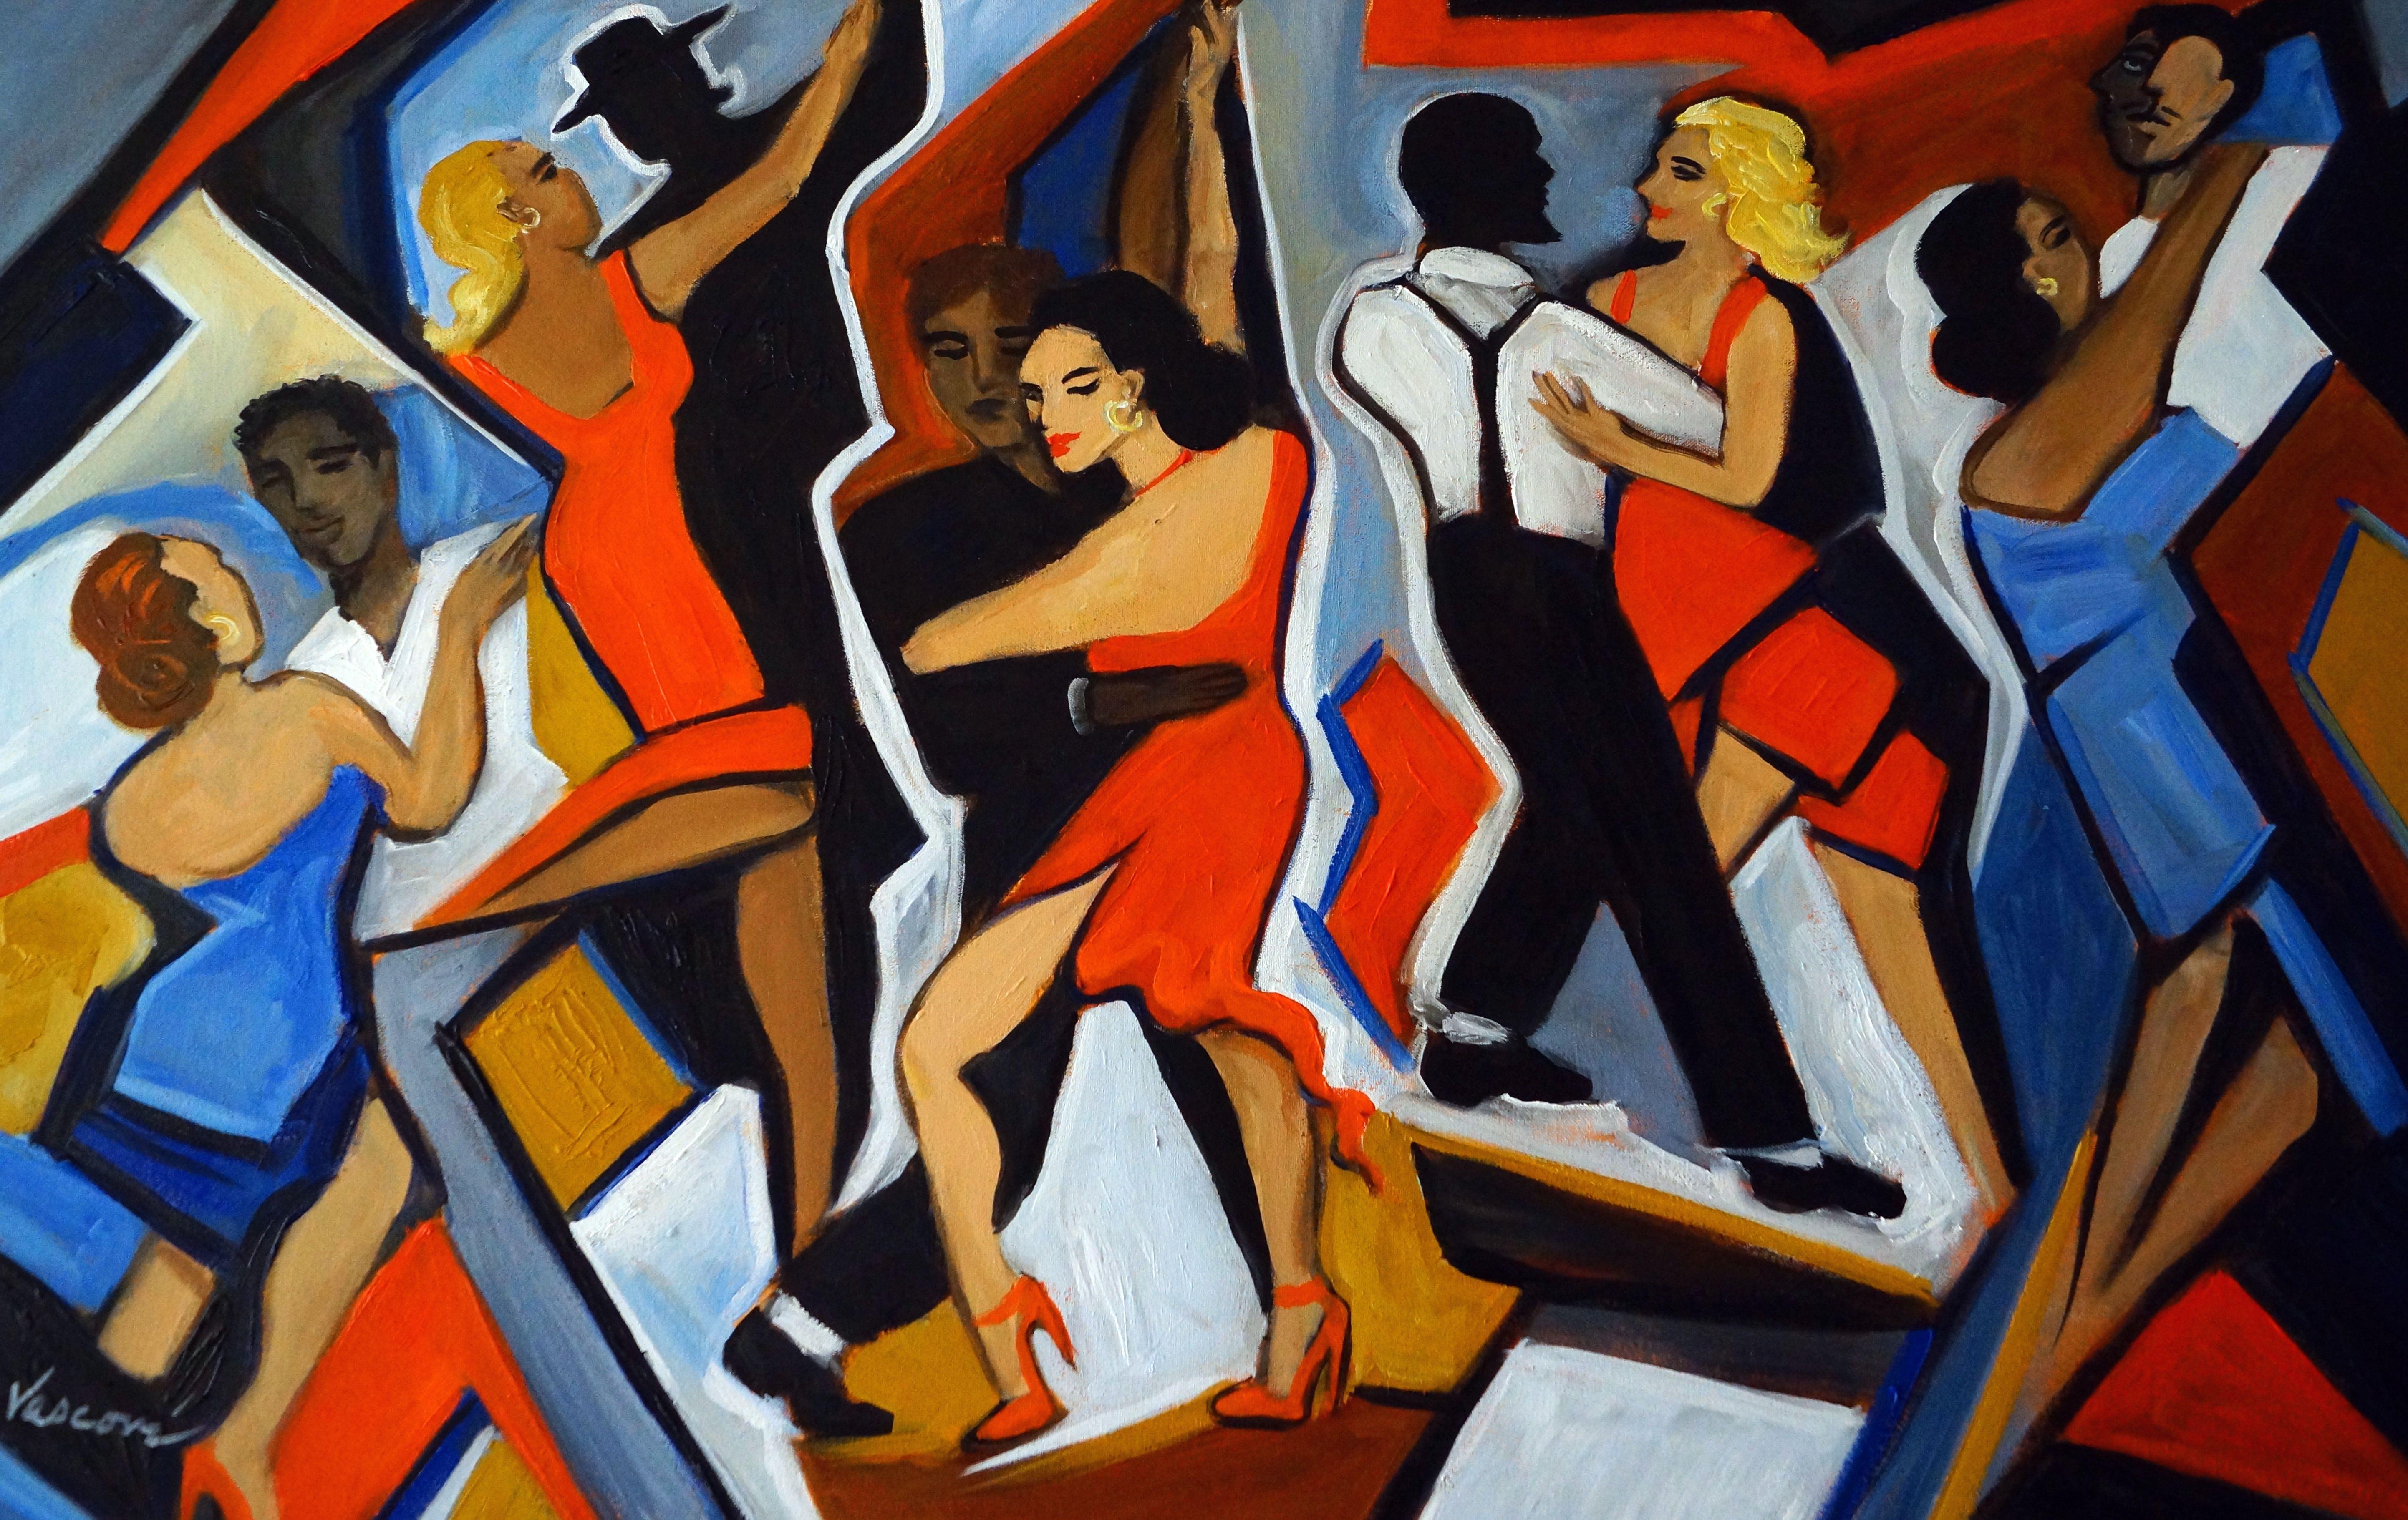 Peinture, huile sur toile, Noche de Tango - Painting de Valerie Vescovi